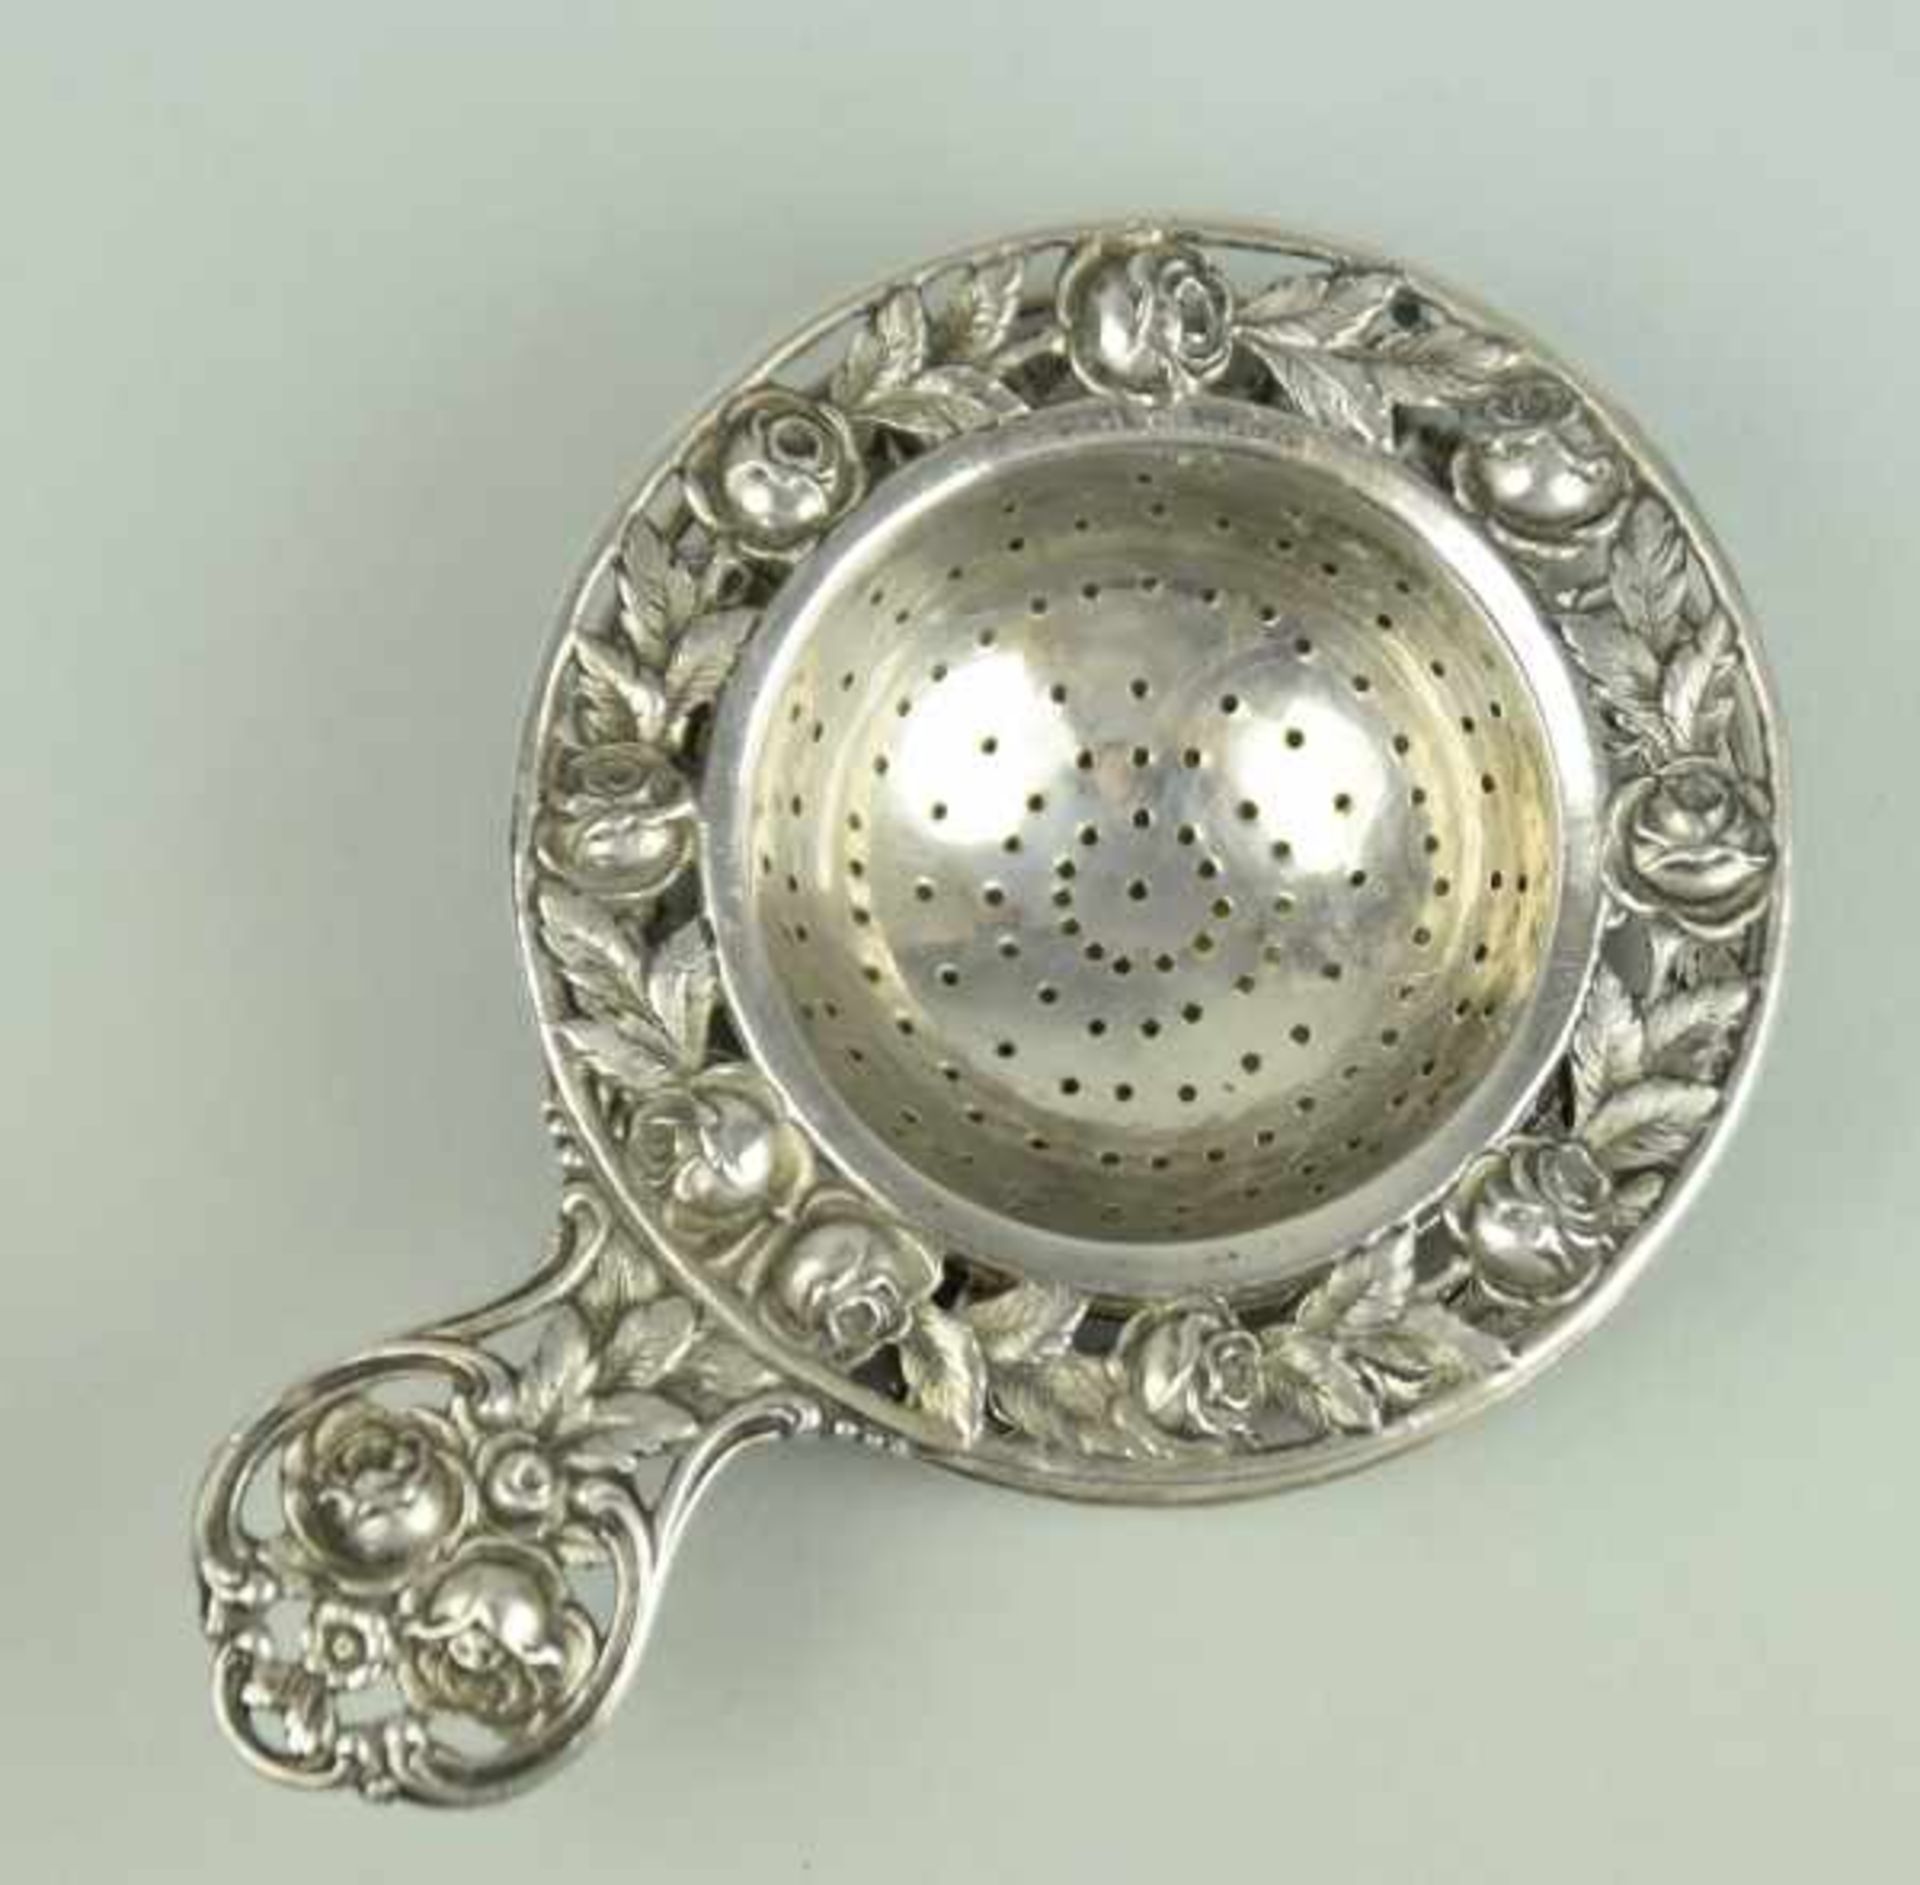 TEESIEB mit Untersatz, reich reliefiert mit Rosenmotiven, Silber 800, 118gr, D 8,5cm - Bild 3 aus 4